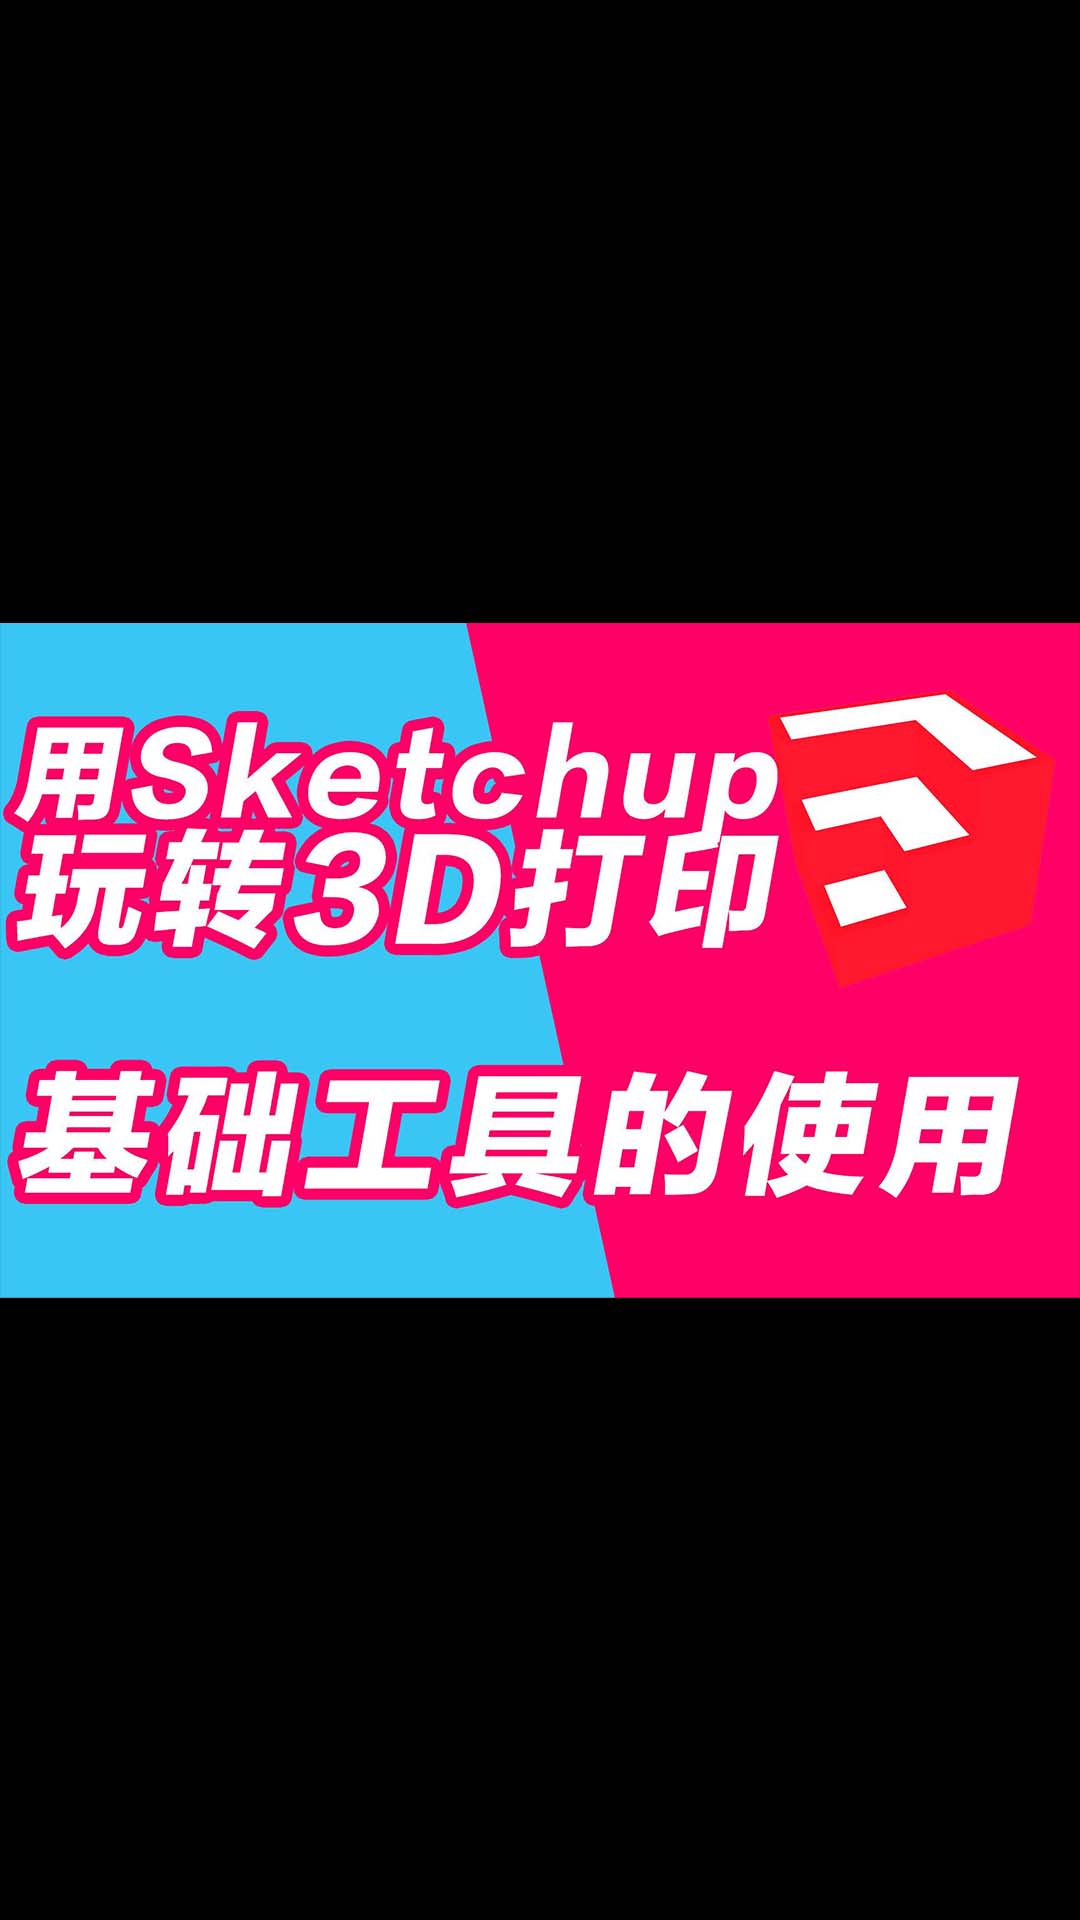 玩转3D打印机系列 用sketchup做3D打印建模 基础工具的使用